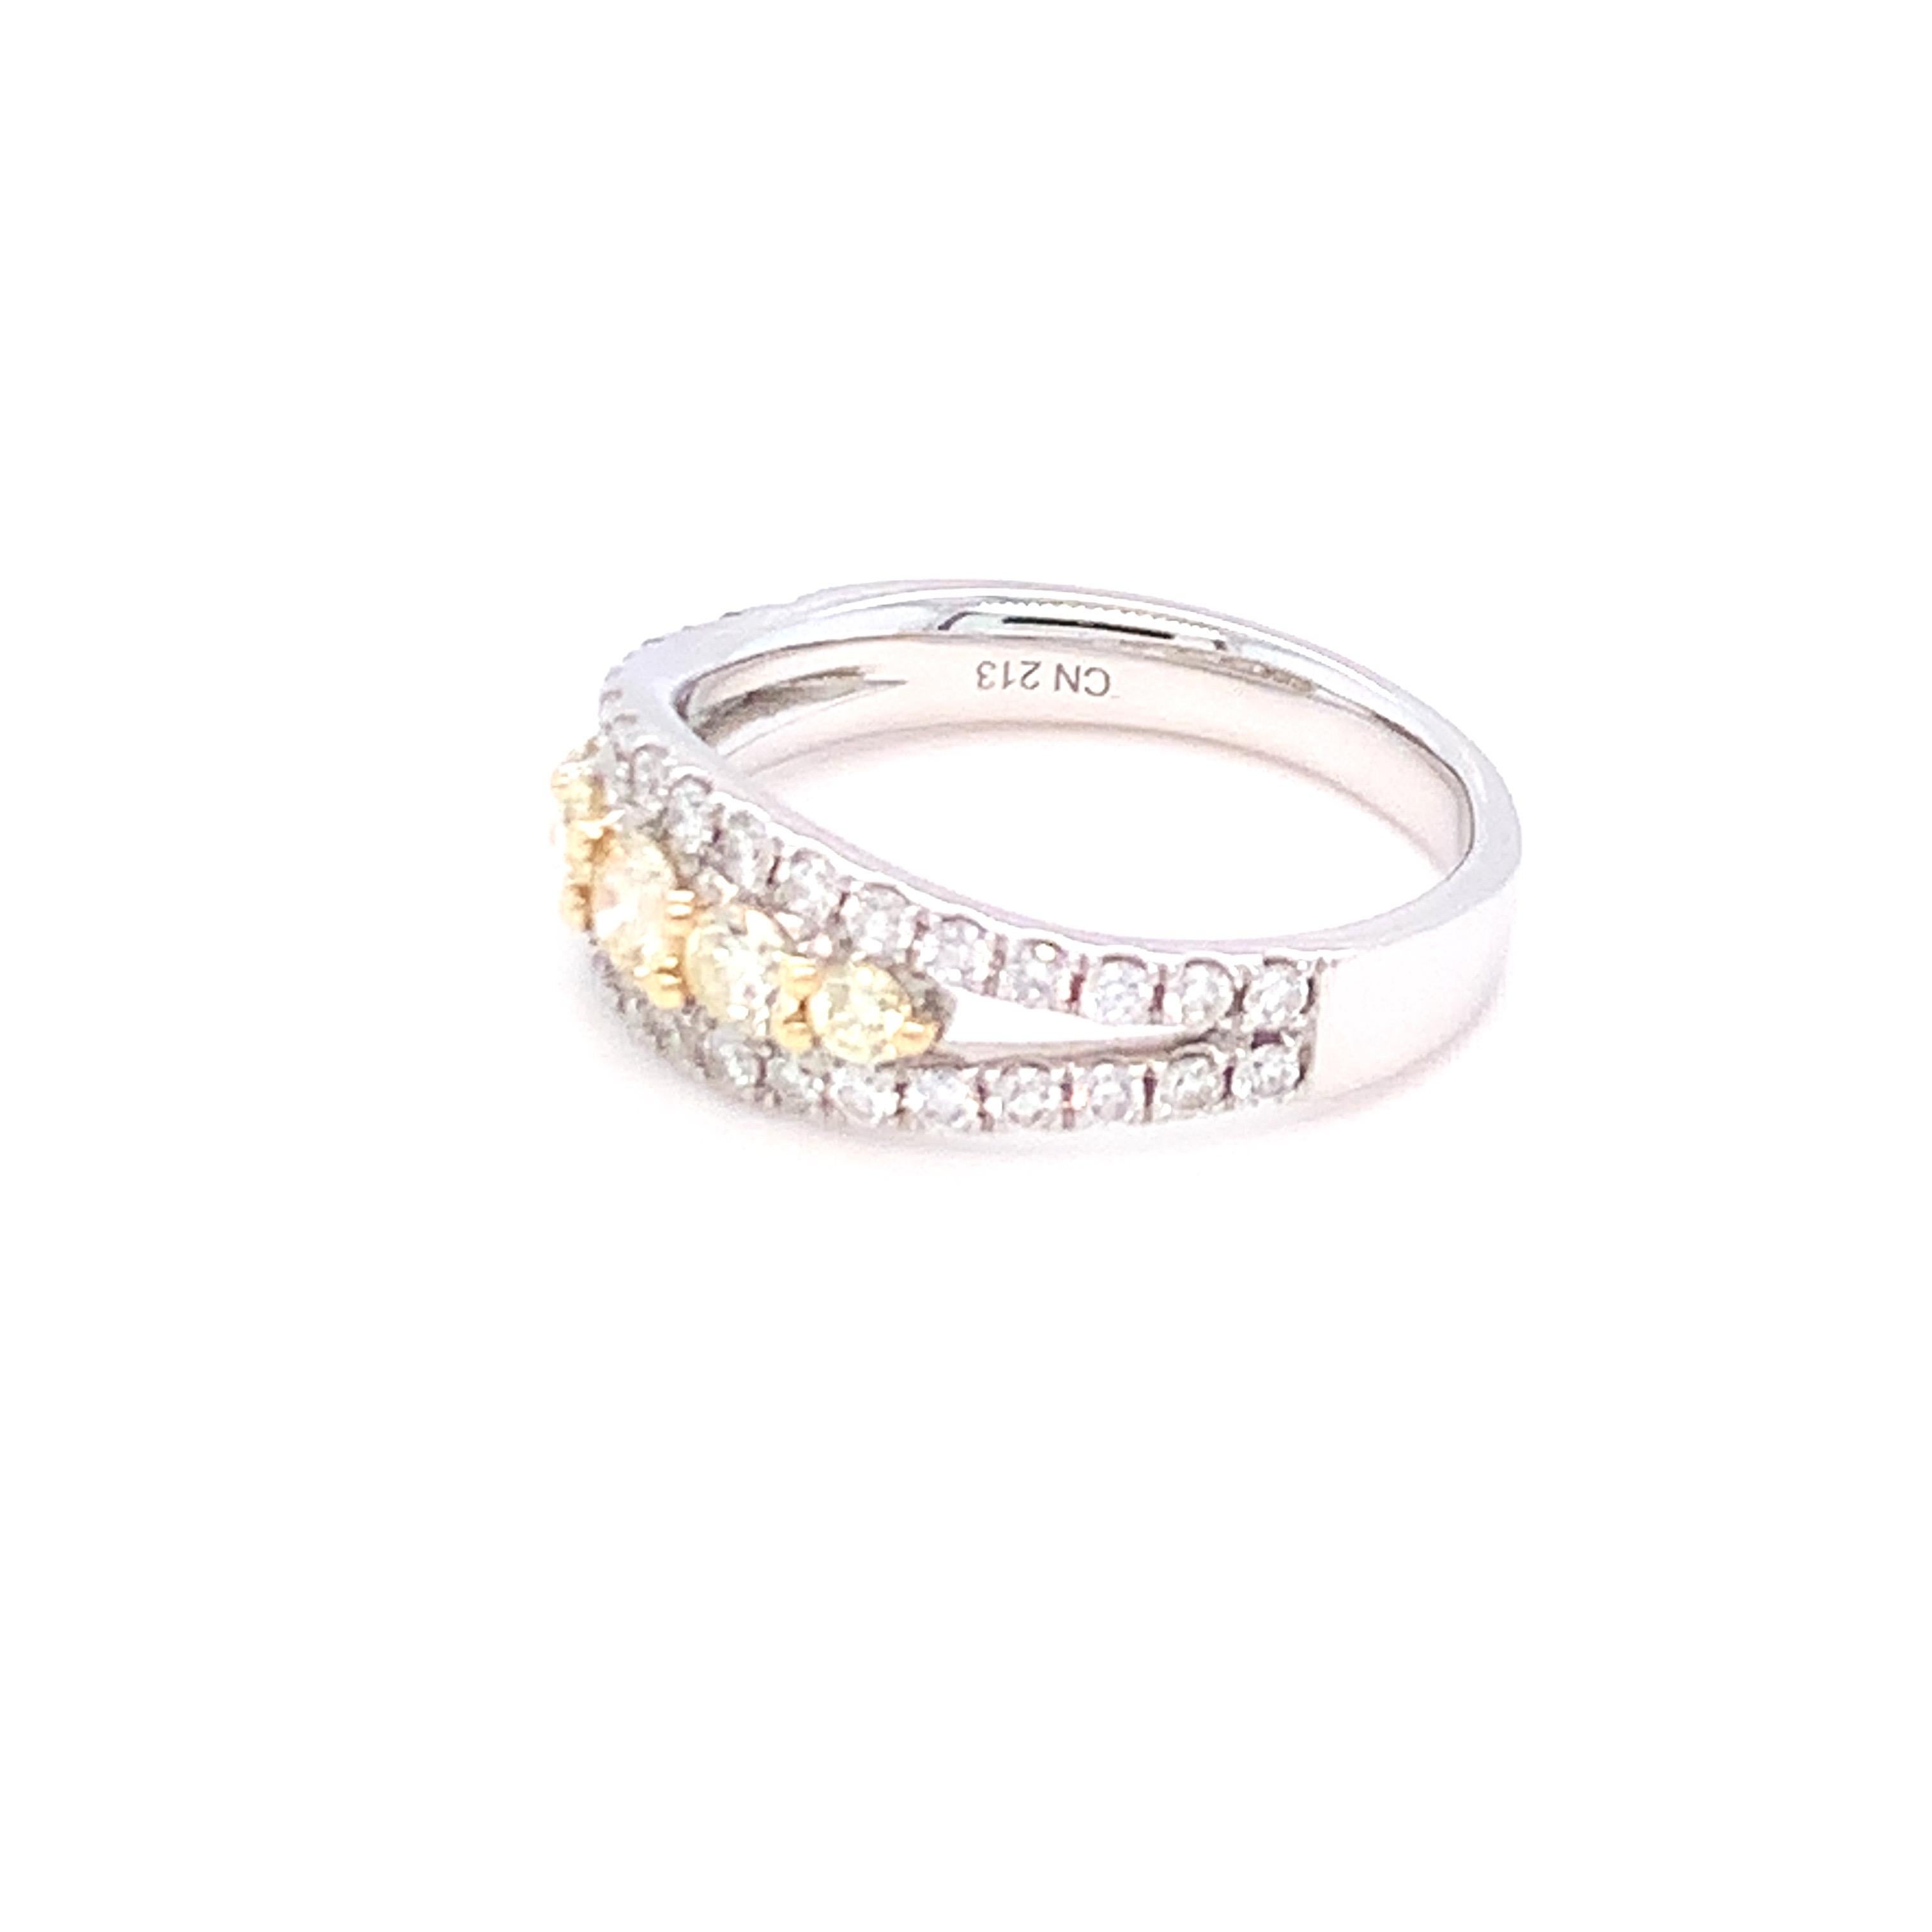 La combinaison de diamants jaunes et blancs sur trois rangs fait de ce bracelet un bijou simple à porter au quotidien. Serti en or deux tons et fini à la main par des artisans qualifiés.
Diamant jaune : 0,44ct
Diamant blanc : 0,51ct
Or : 14K deux